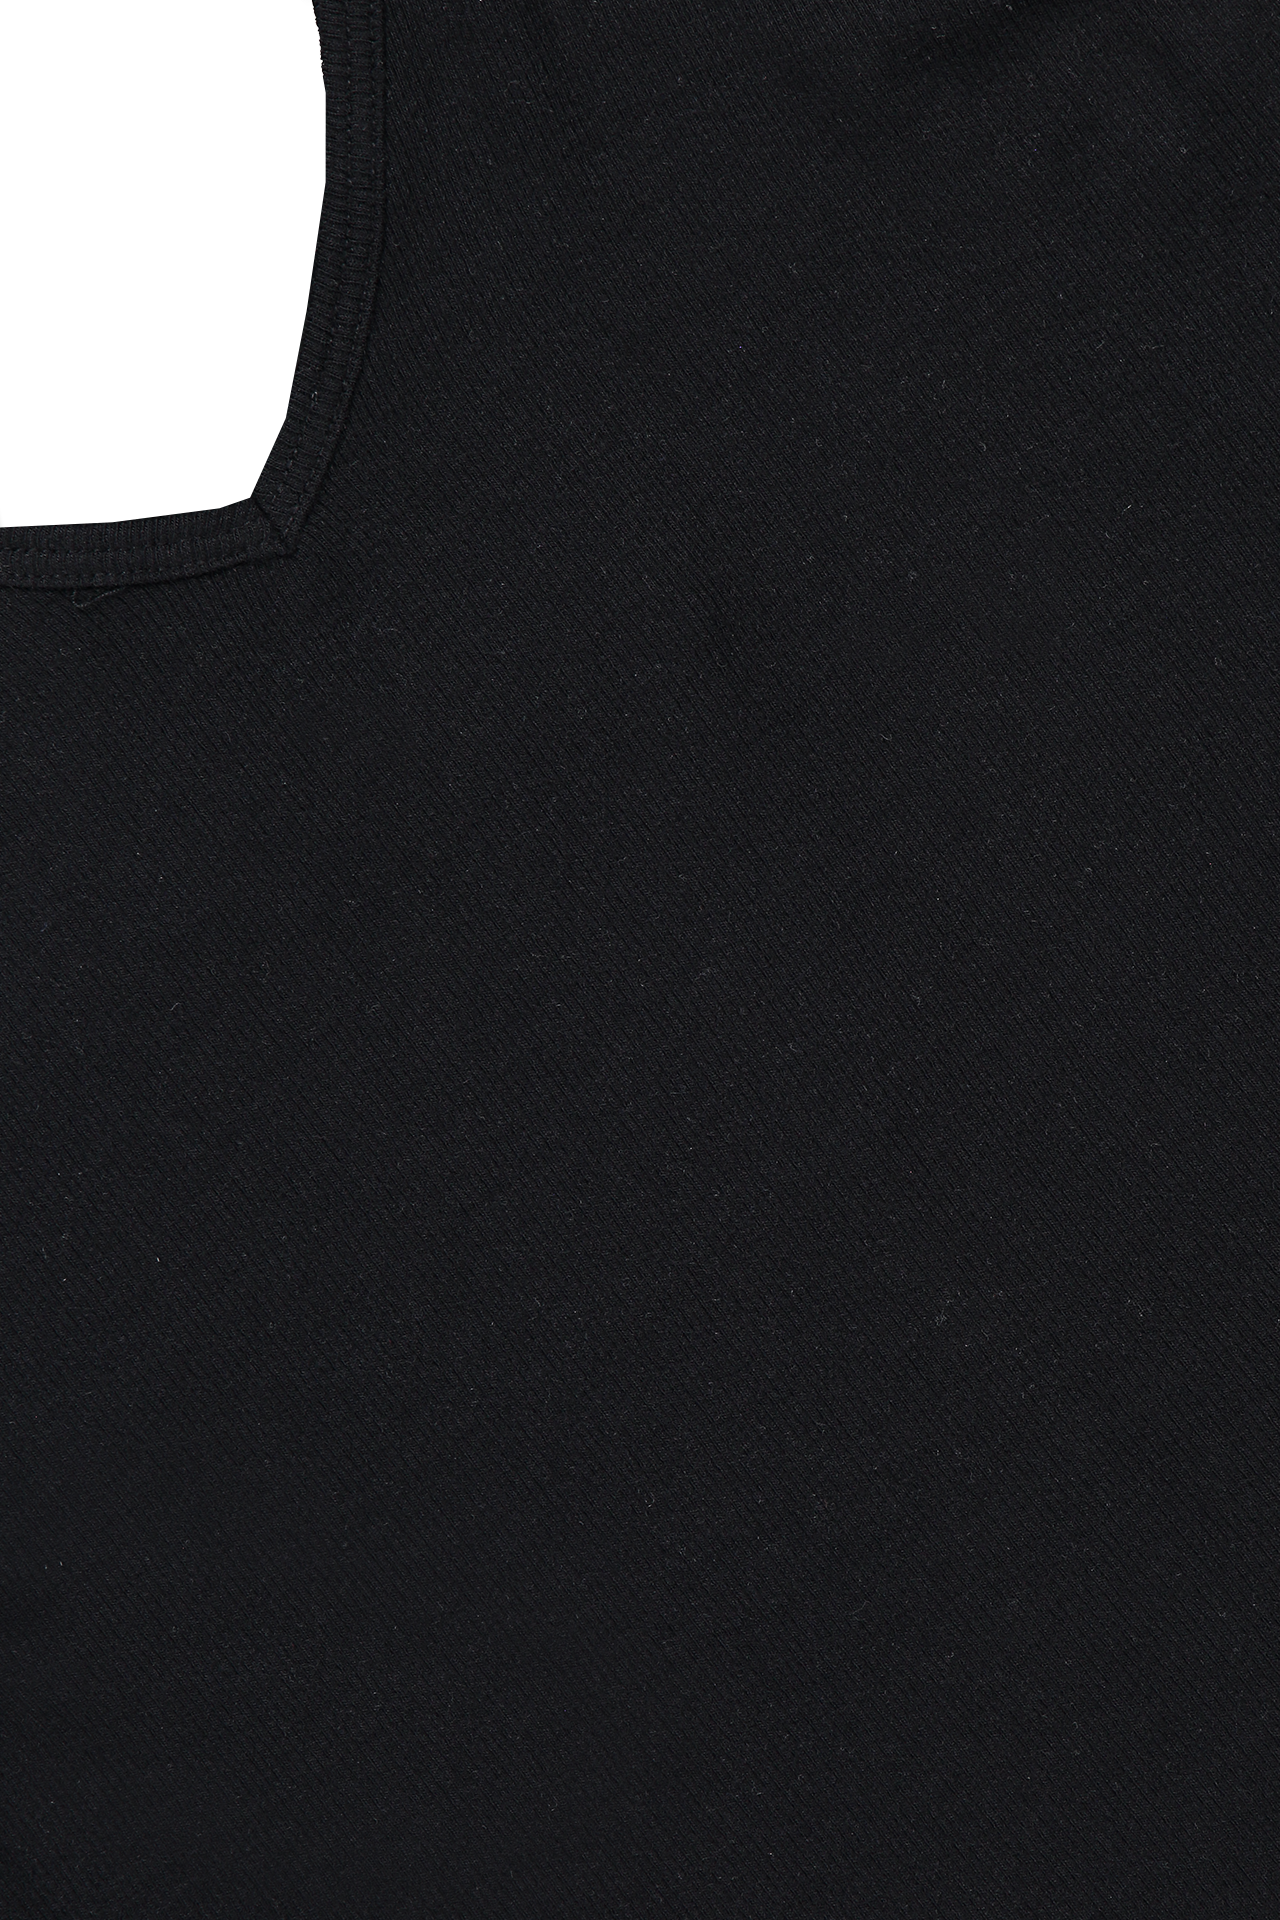 ATM V-Neck Tank Bodysuit Black Collar Detail (6616001937523)